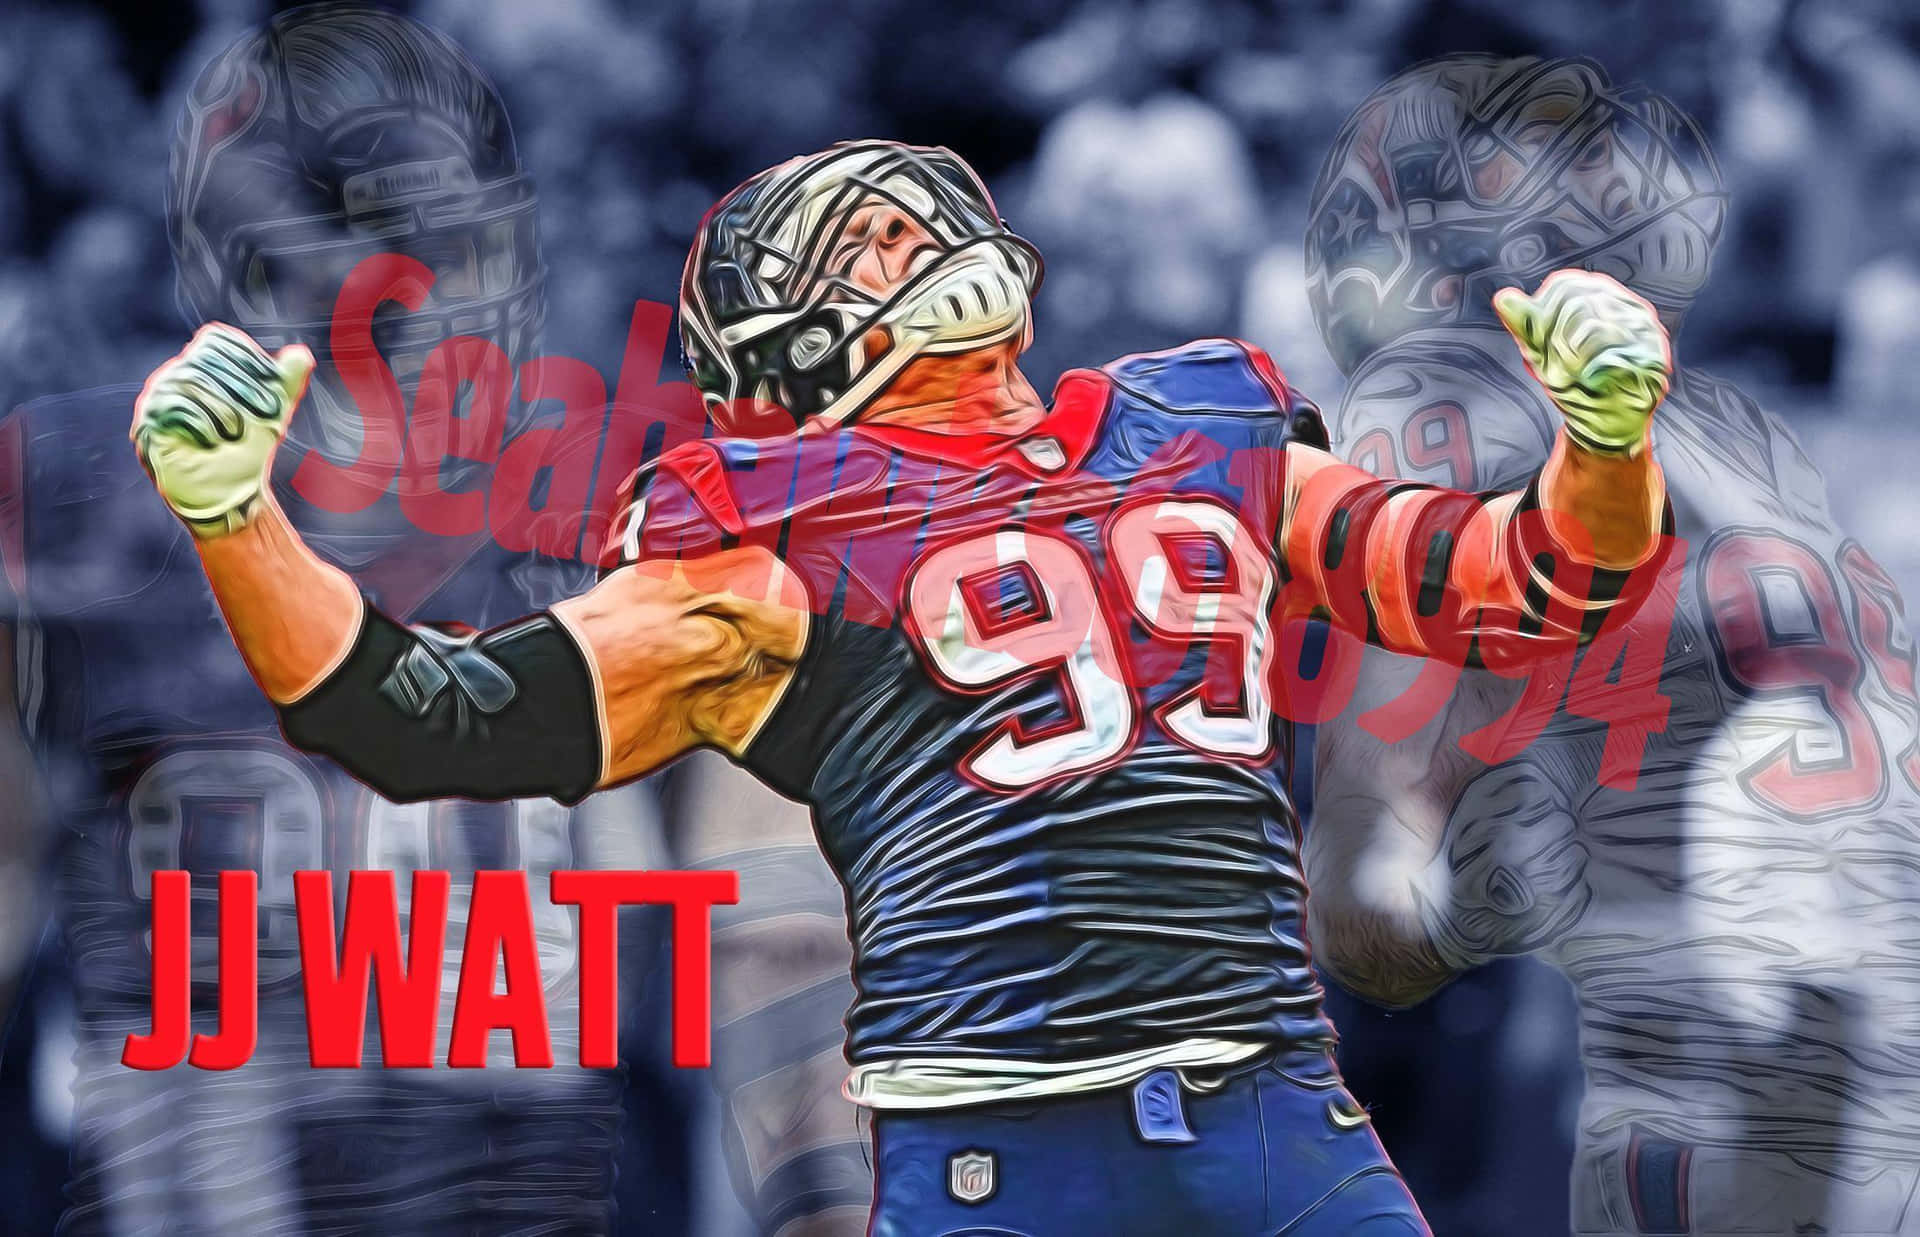 Actualizaciónde La Lesión De Jj Watt: El Jugador Defensivo De Los Houston Texans Se Toma Tiempo Para Recuperarse. Fondo de pantalla